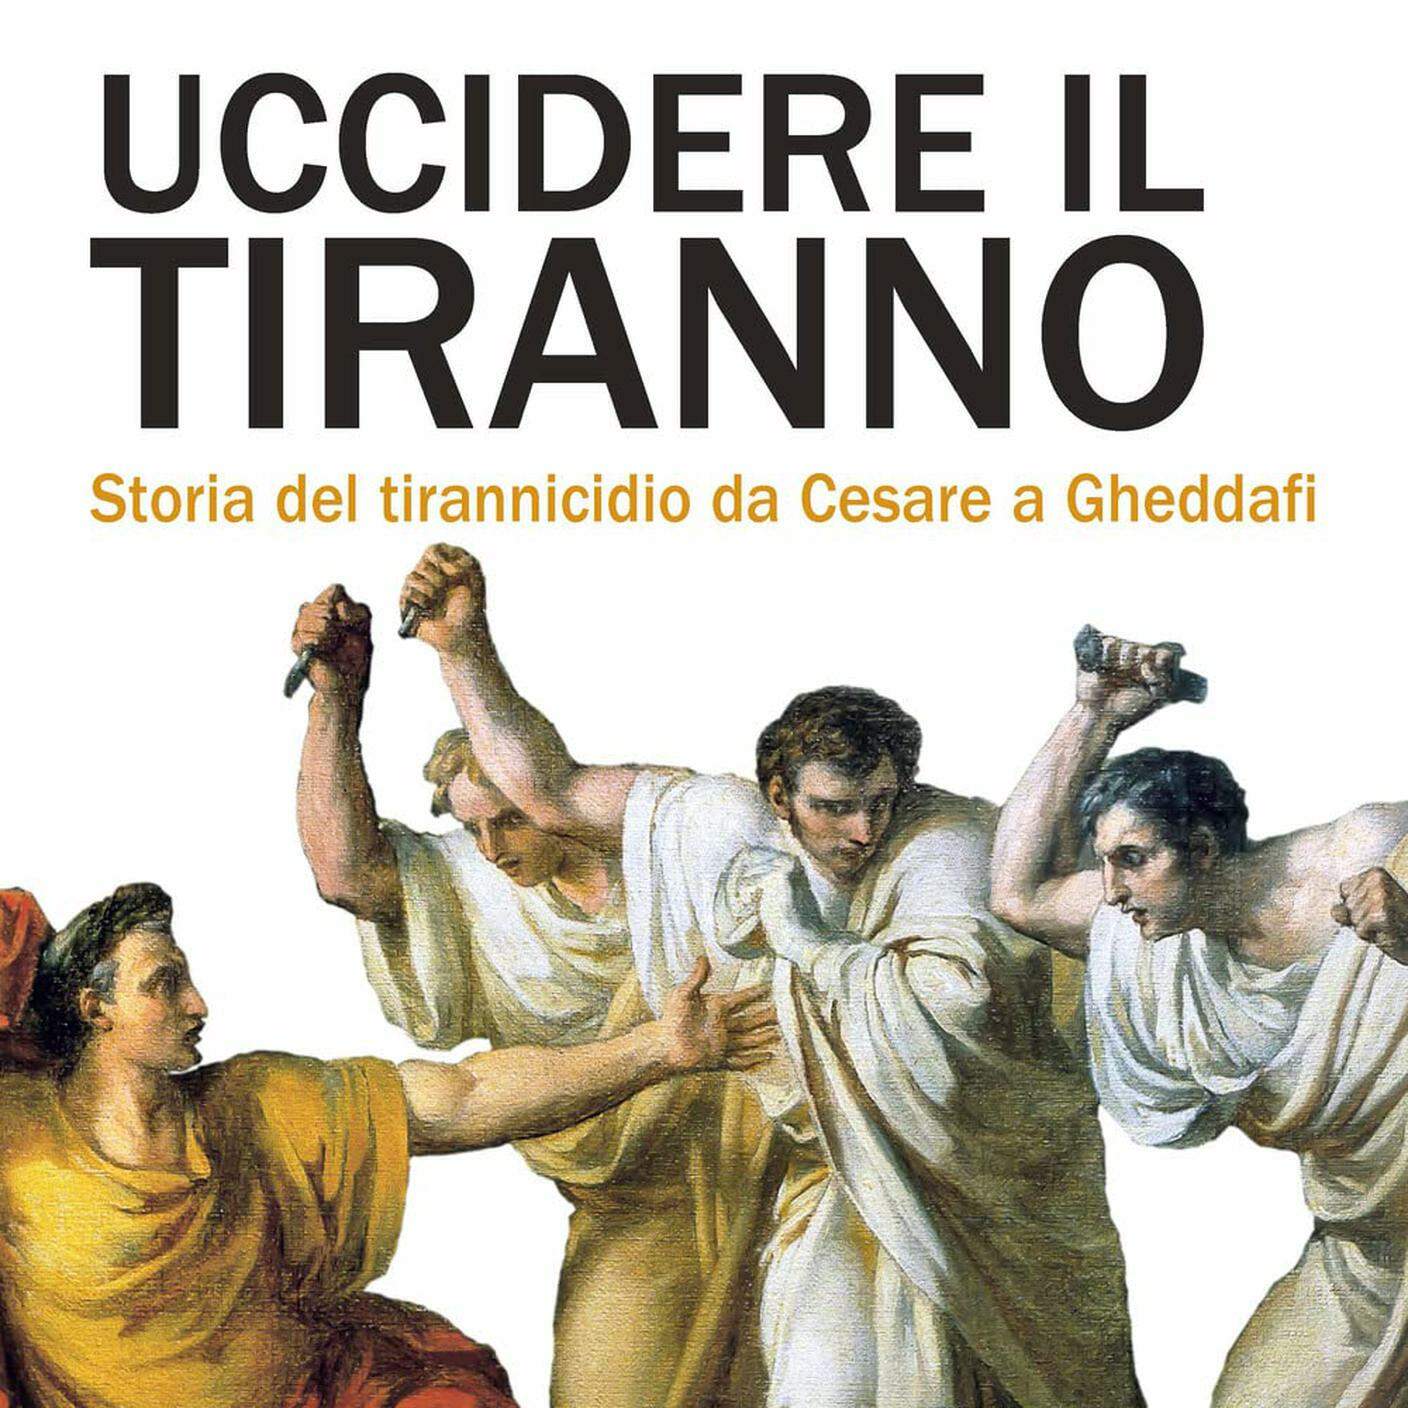 "Uccidere il tiranno. Storia del tirannicidio da Cesare a Gheddafi" di Aldo Andrea Cassi, Salerno (dettaglio di copertina)